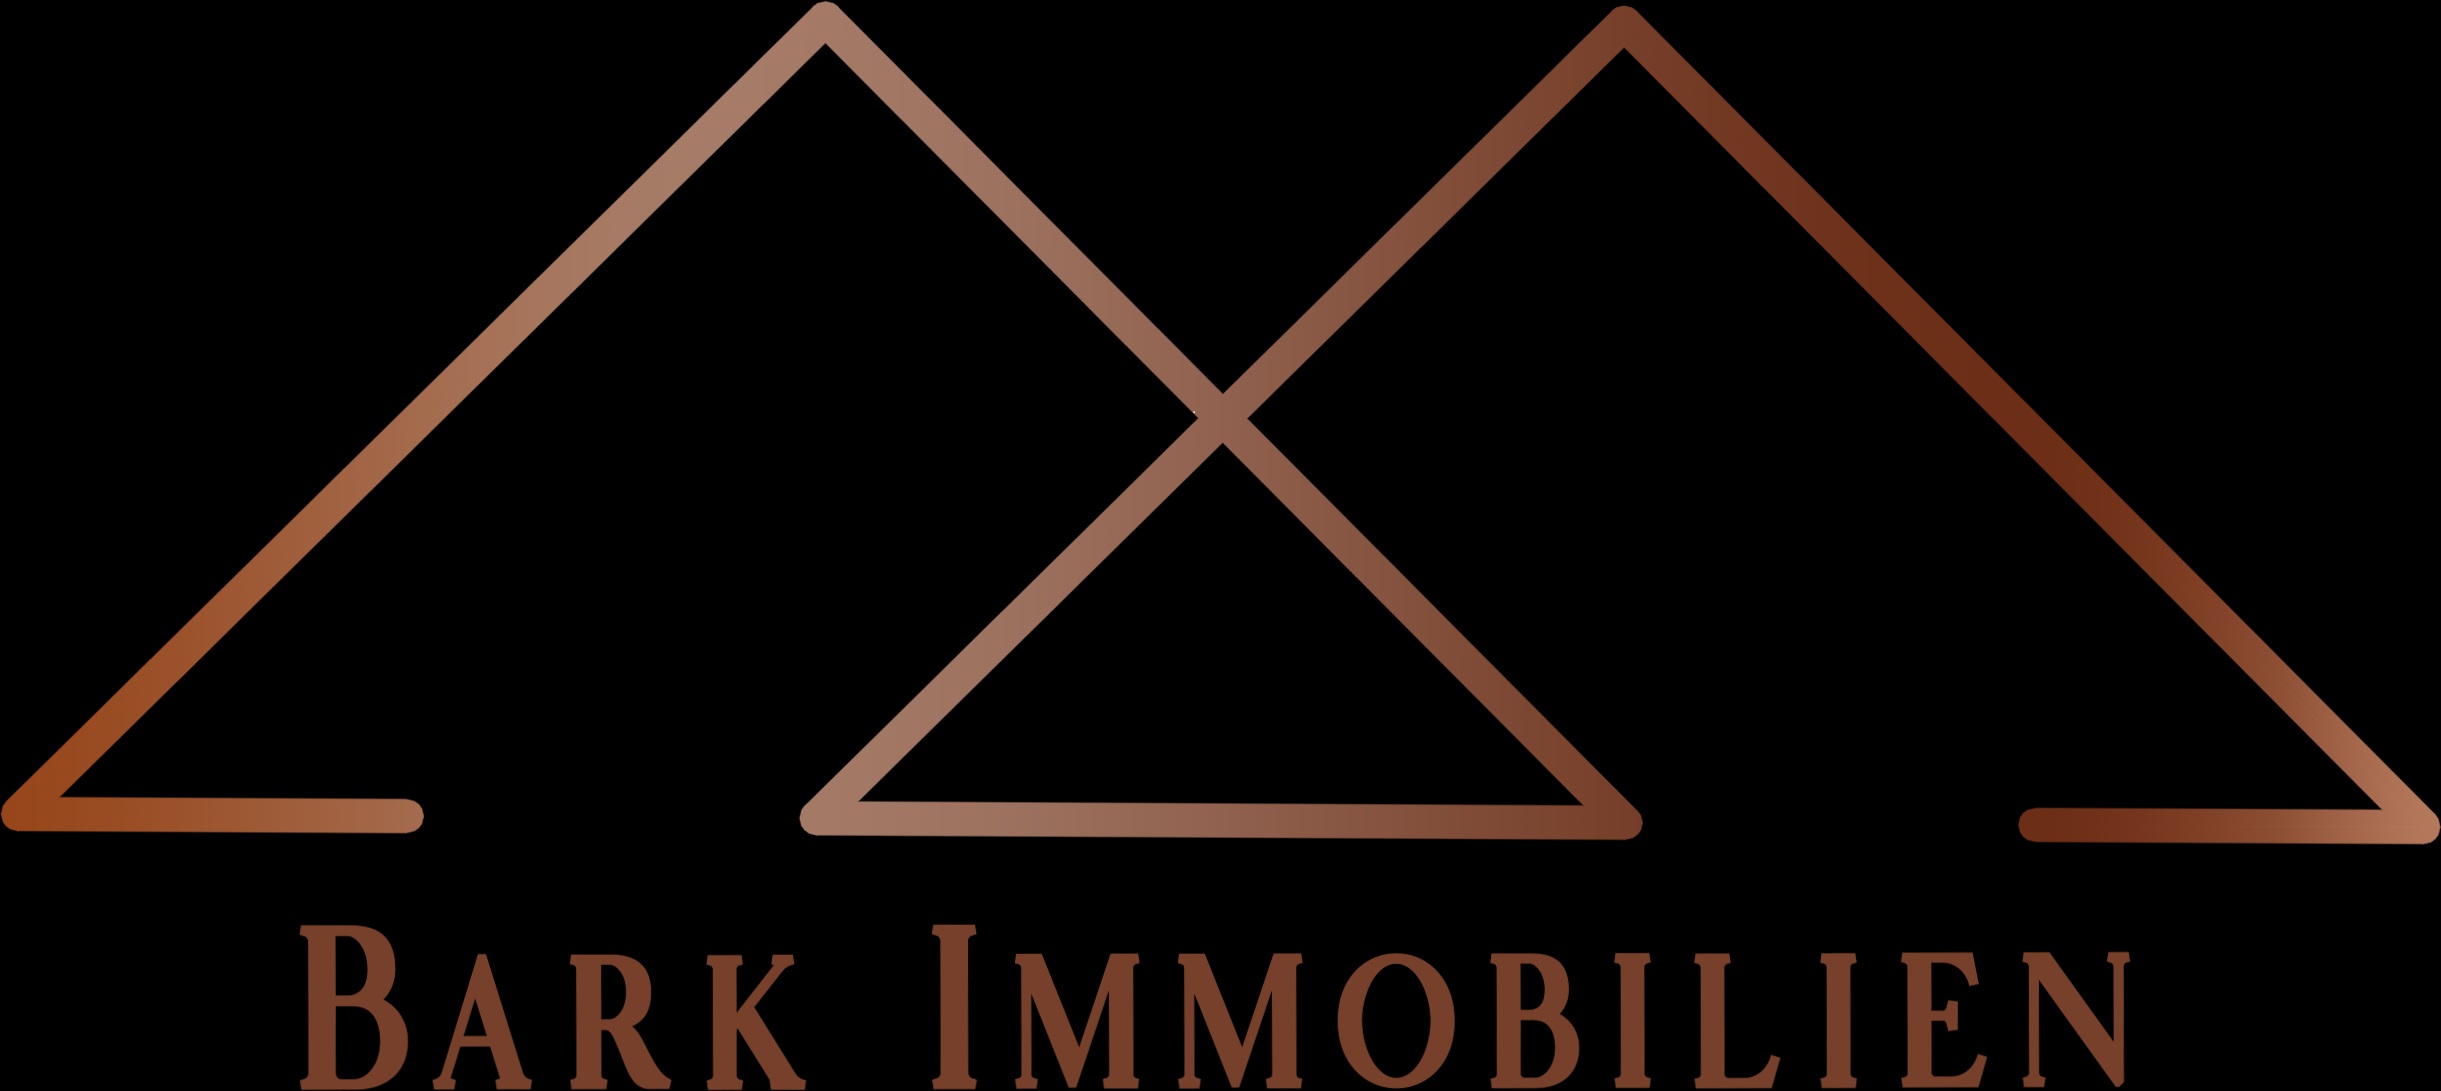 Bark Immobilien Logo